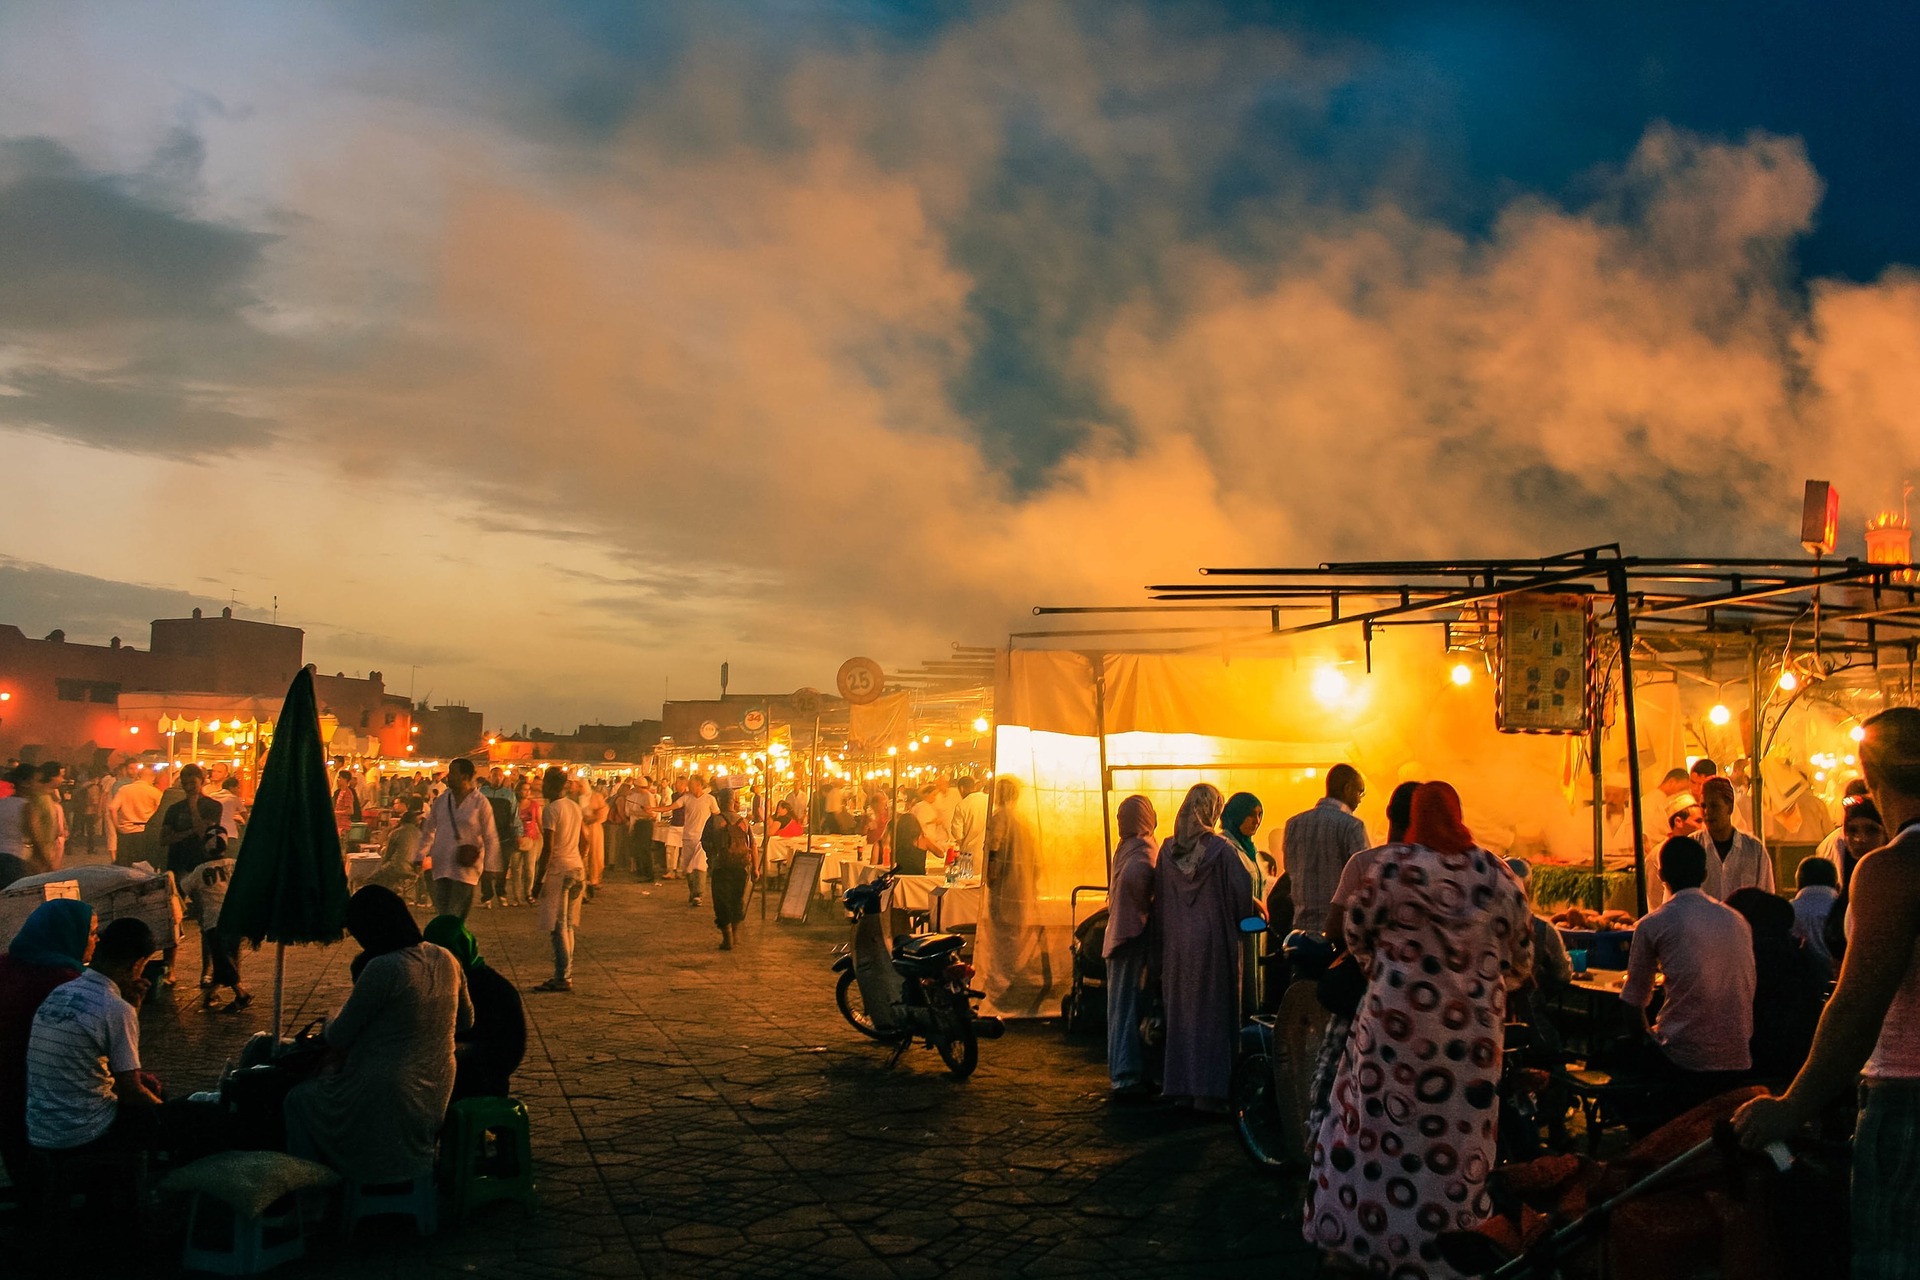 market-bazaar-sunset-smoke-people-freedomain.jpg